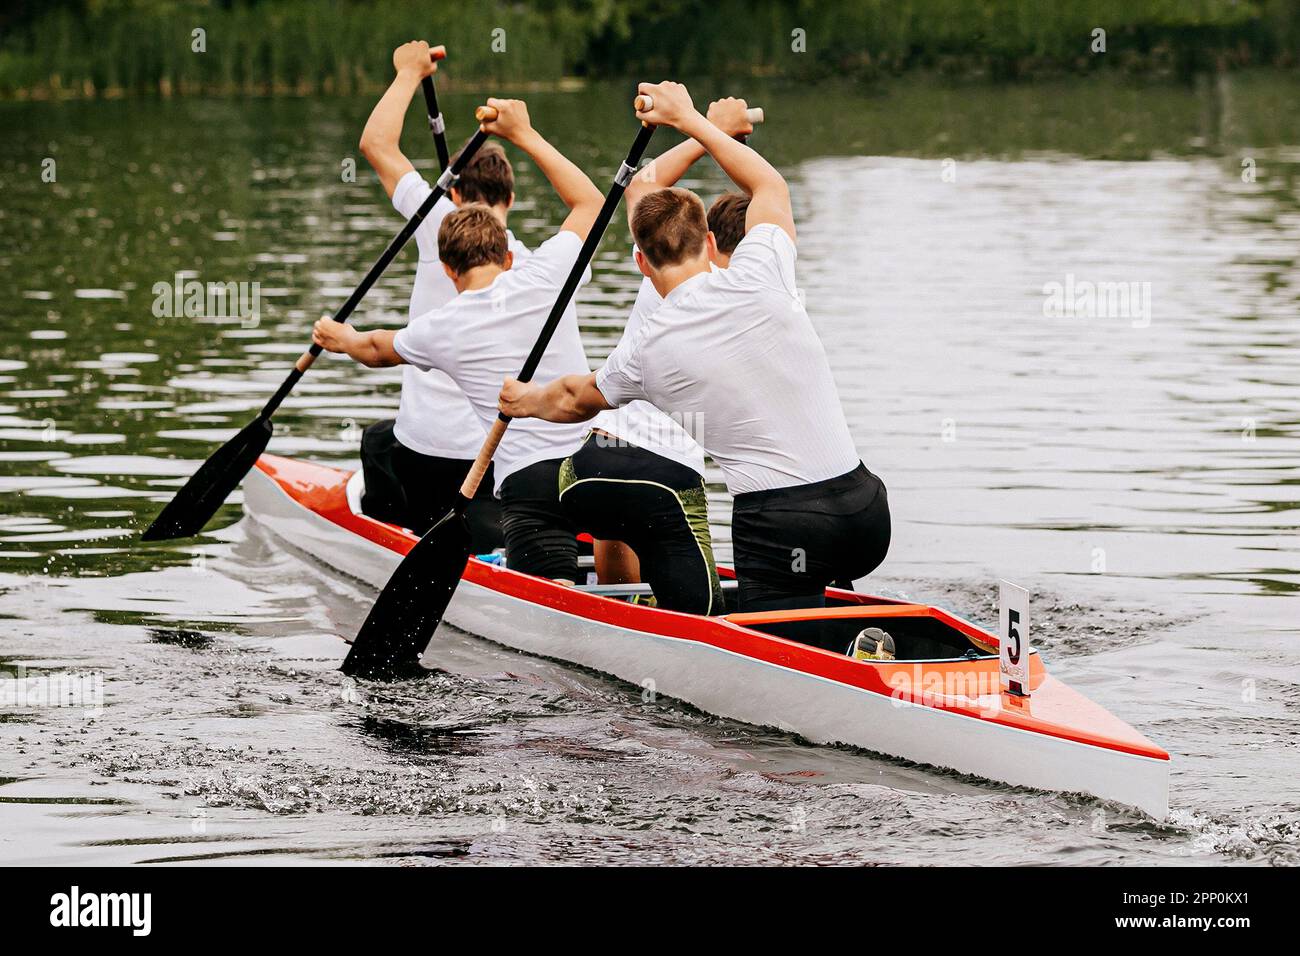 Männlicher Kanufahrer auf Kanu vier beim Kanufahrrennen, Sport-Sommerspiele Stockfoto